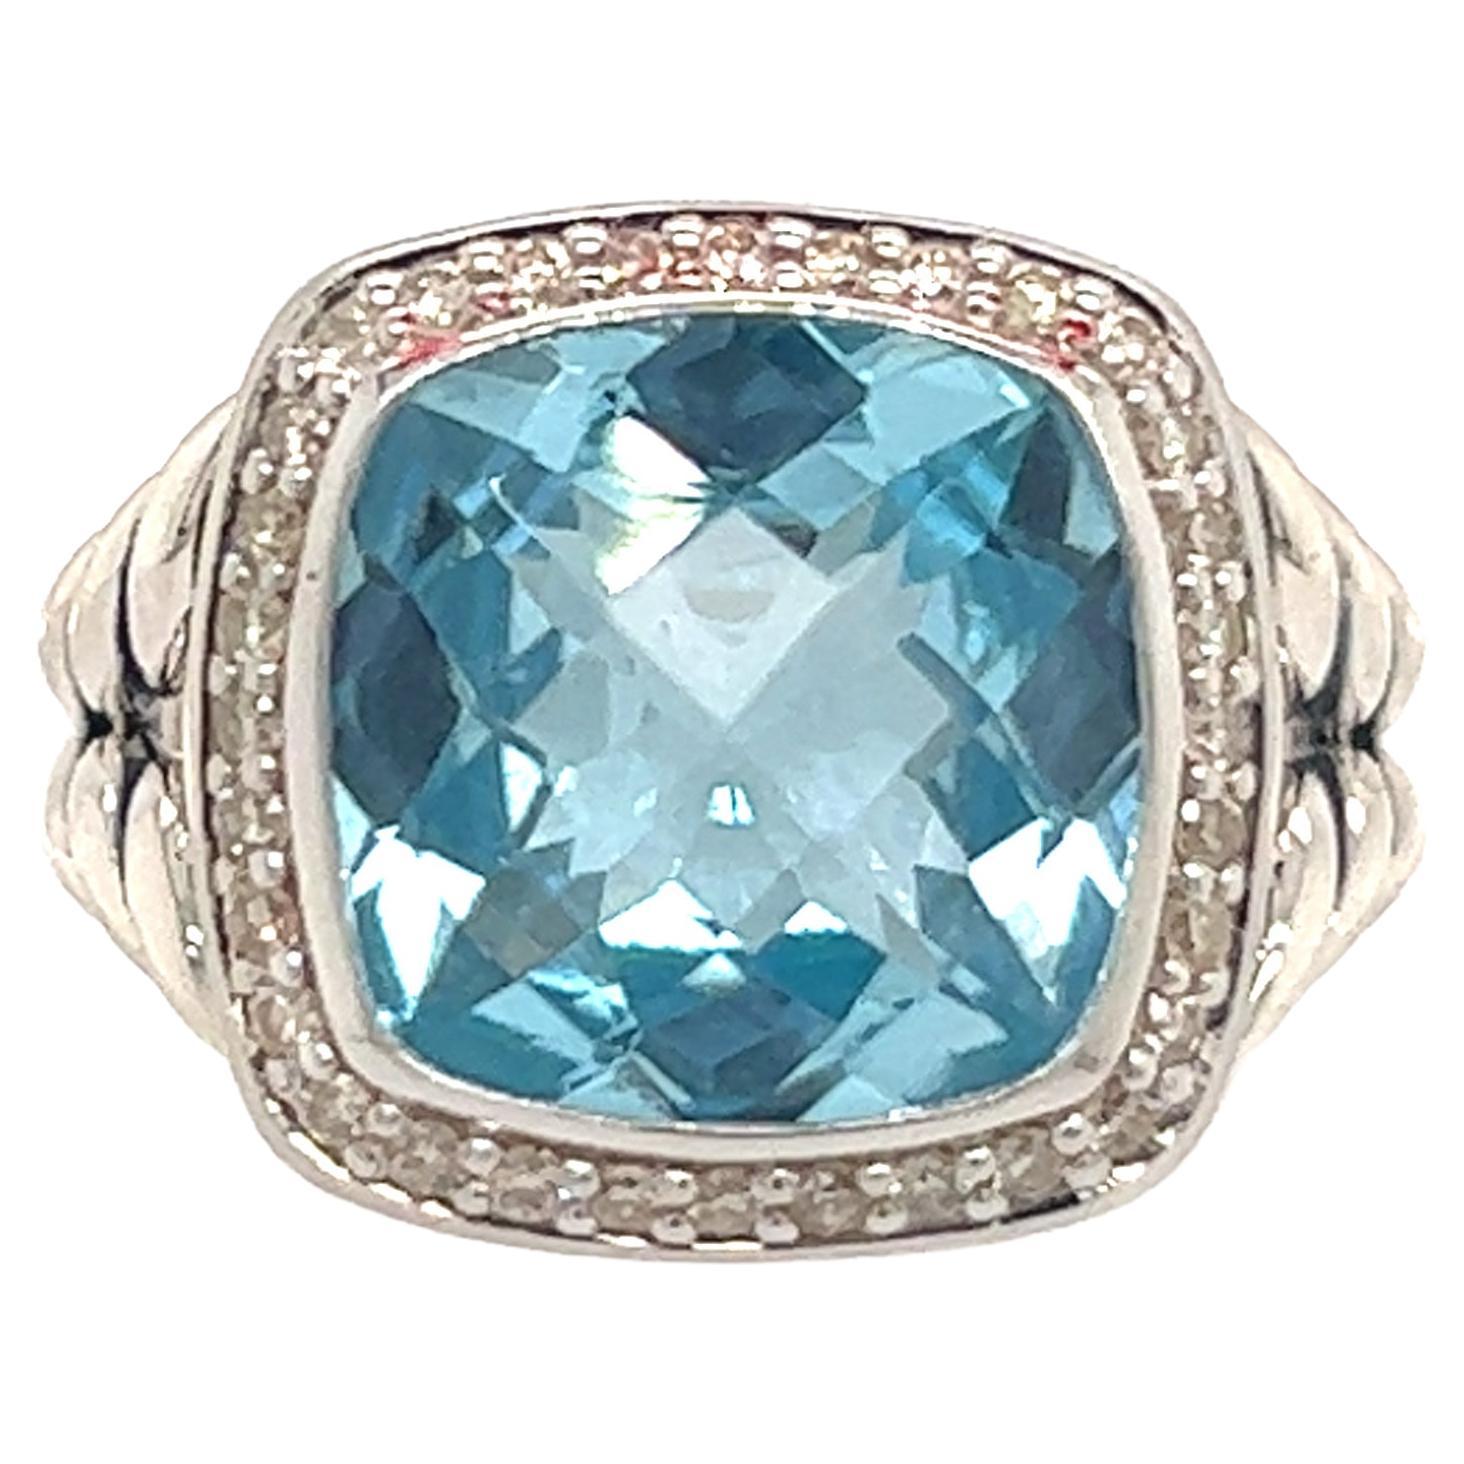 David Yurman Estate Blue Topaz Diamond Albion Ring Silver 0.22 TCW